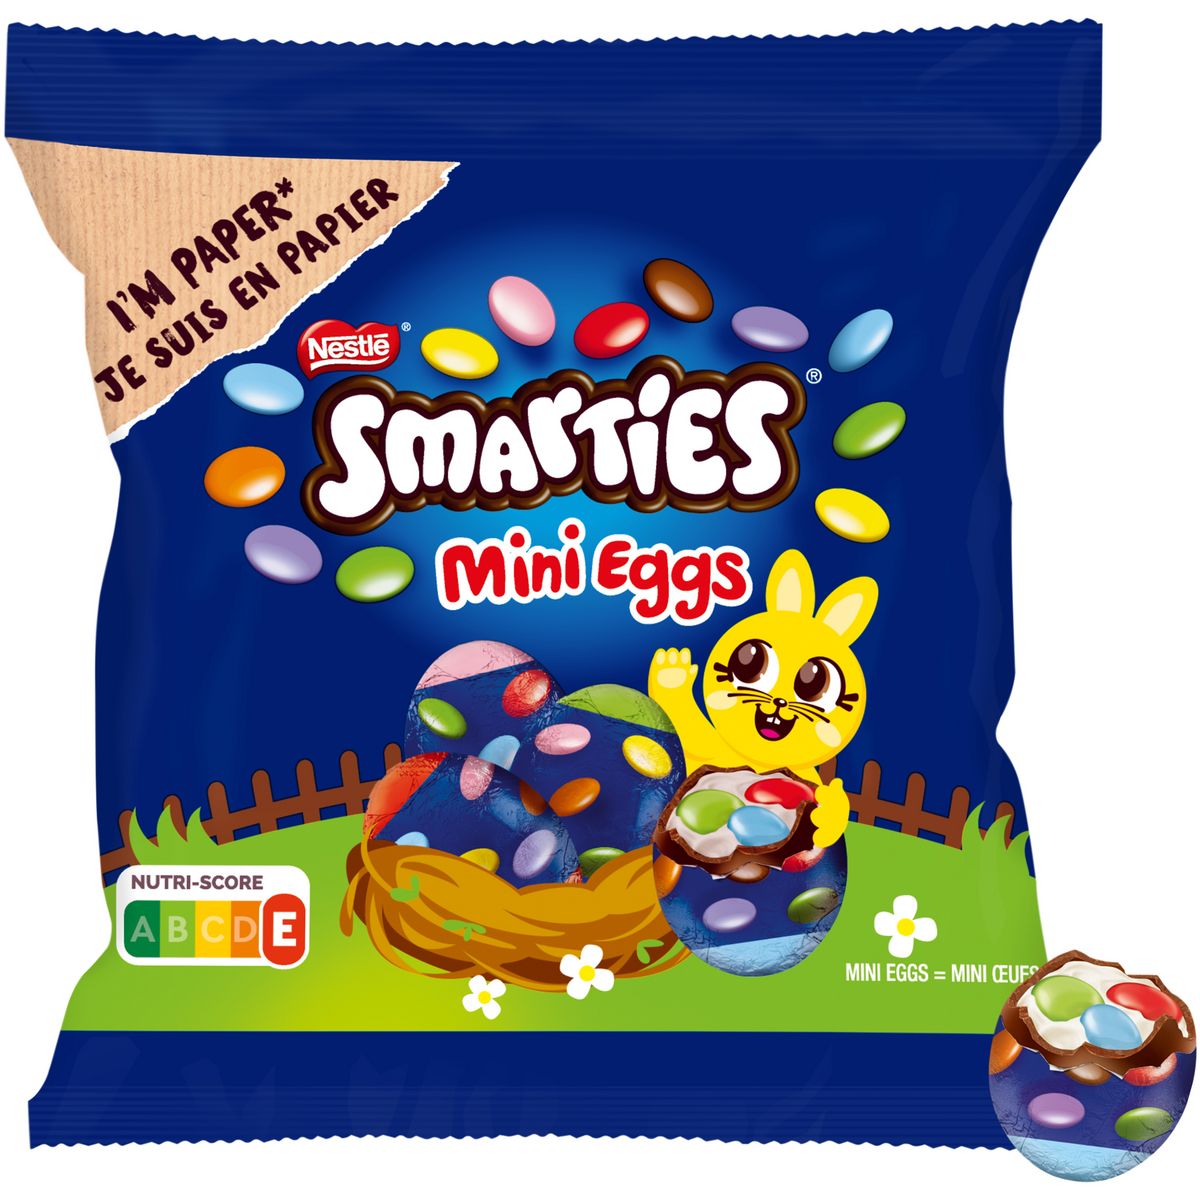 SMARTIES Mini Eggs bonbons de chocolat au lait 81g